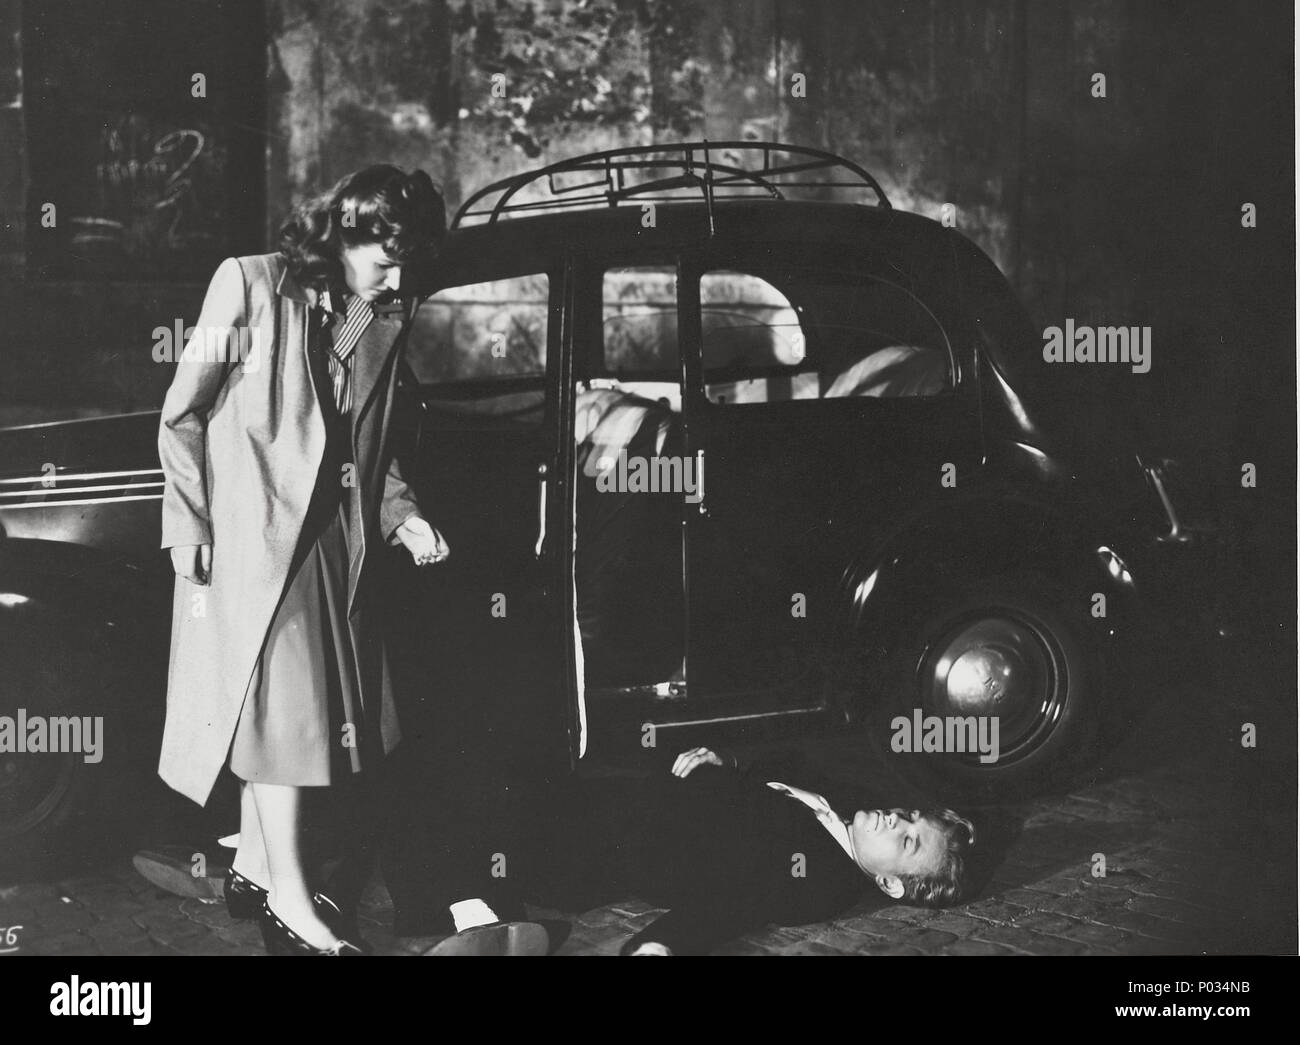 Original Film Title: GIOVENTU PERDUTA.  English Title: LOST YOUTH.  Film Director: PIETRO GERMI.  Year: 1947.  Stars: JACQUES SERNAS; CARLA DEL POGGIO. Stock Photo